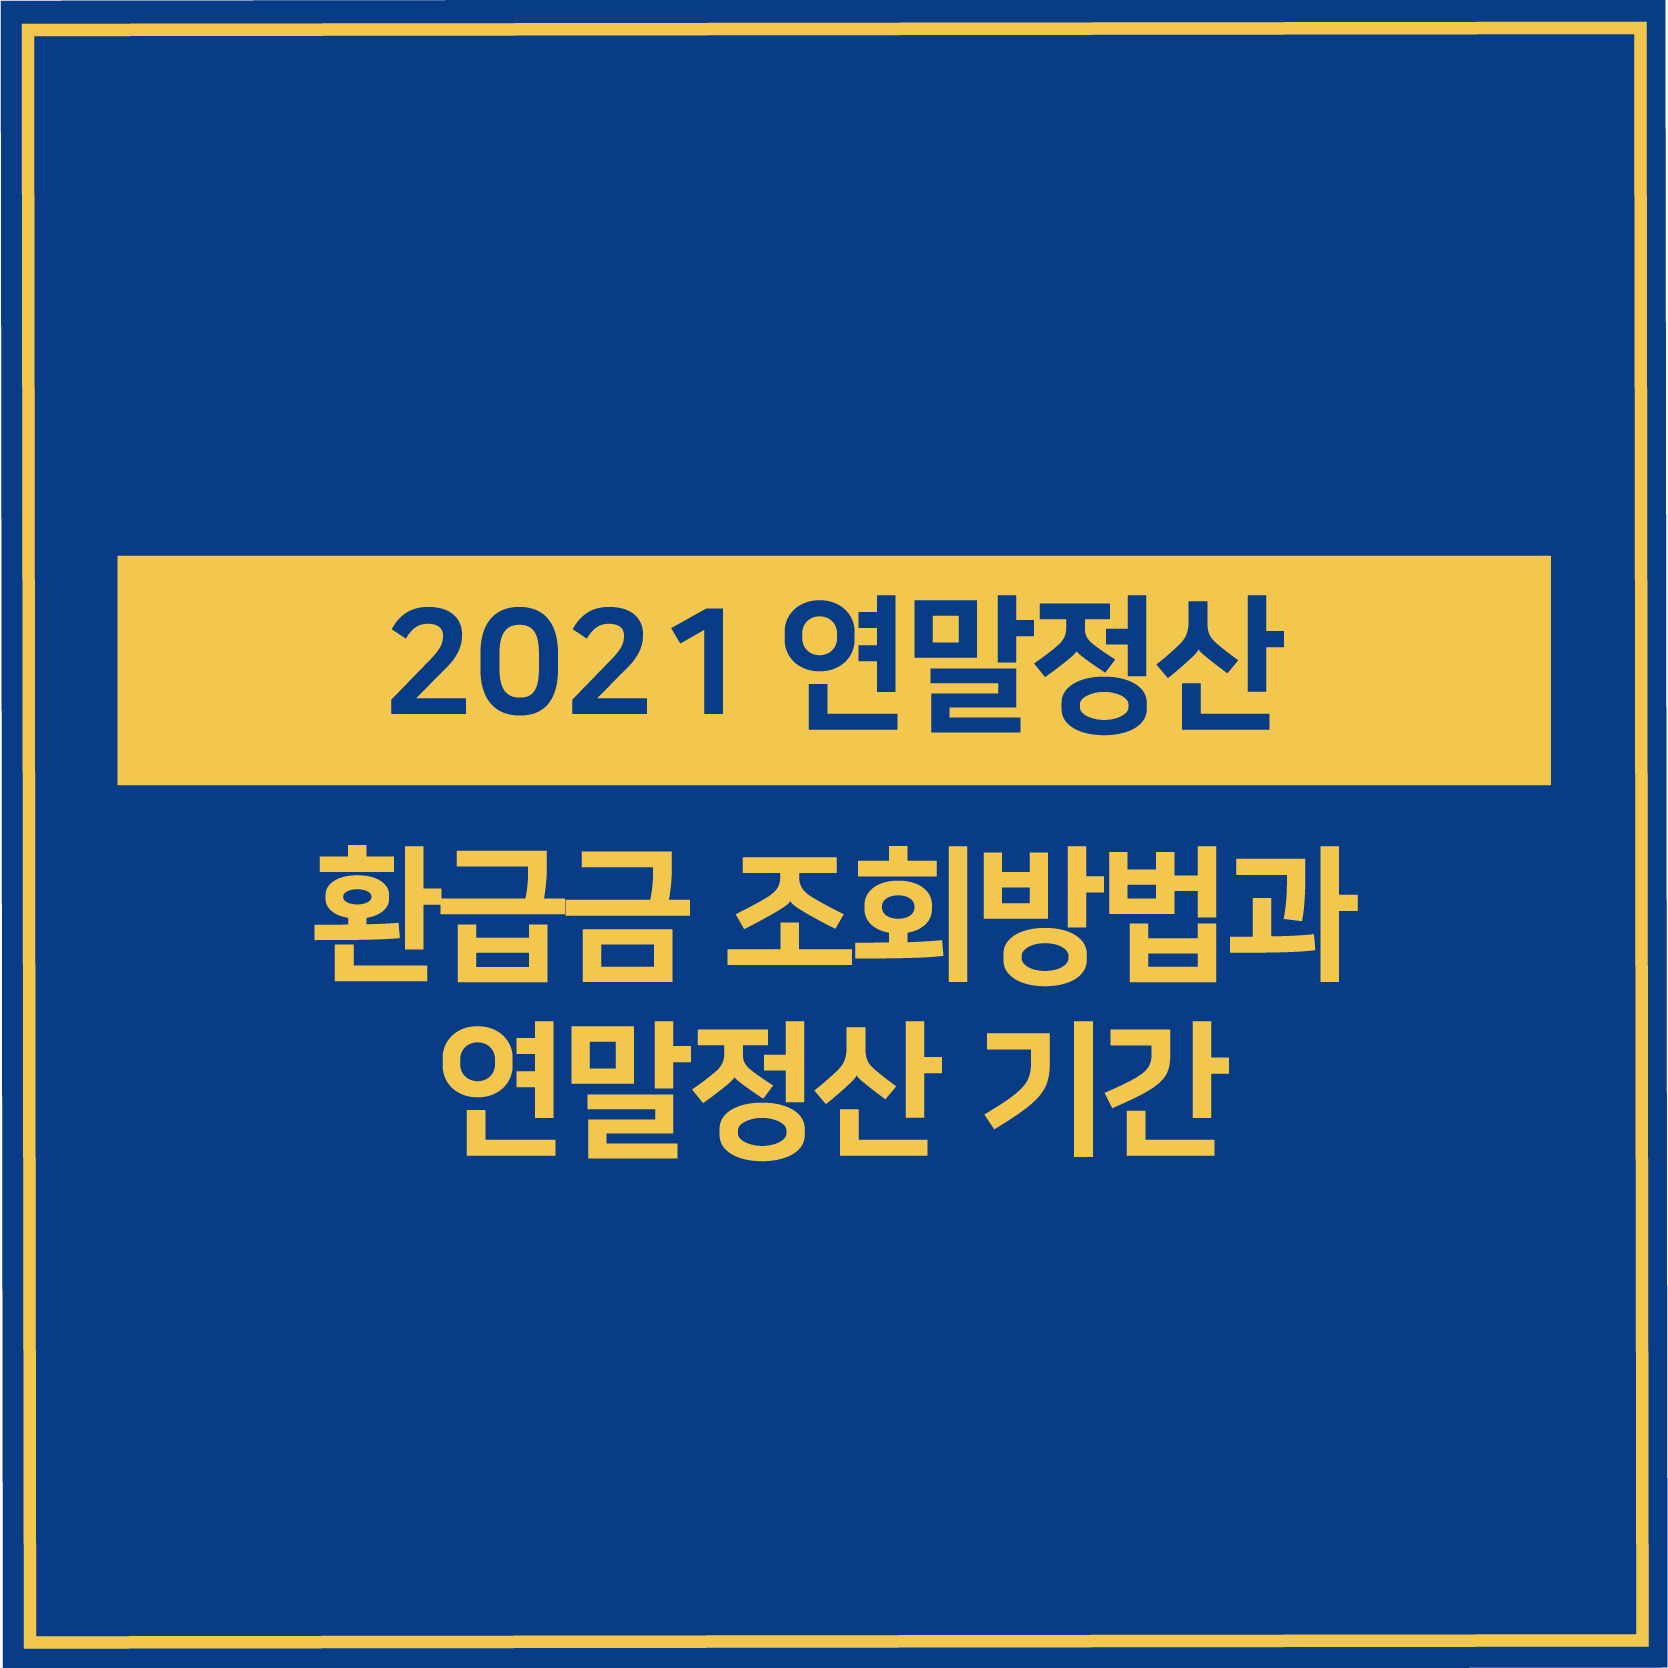 2021 연말 정산 환급금 조회